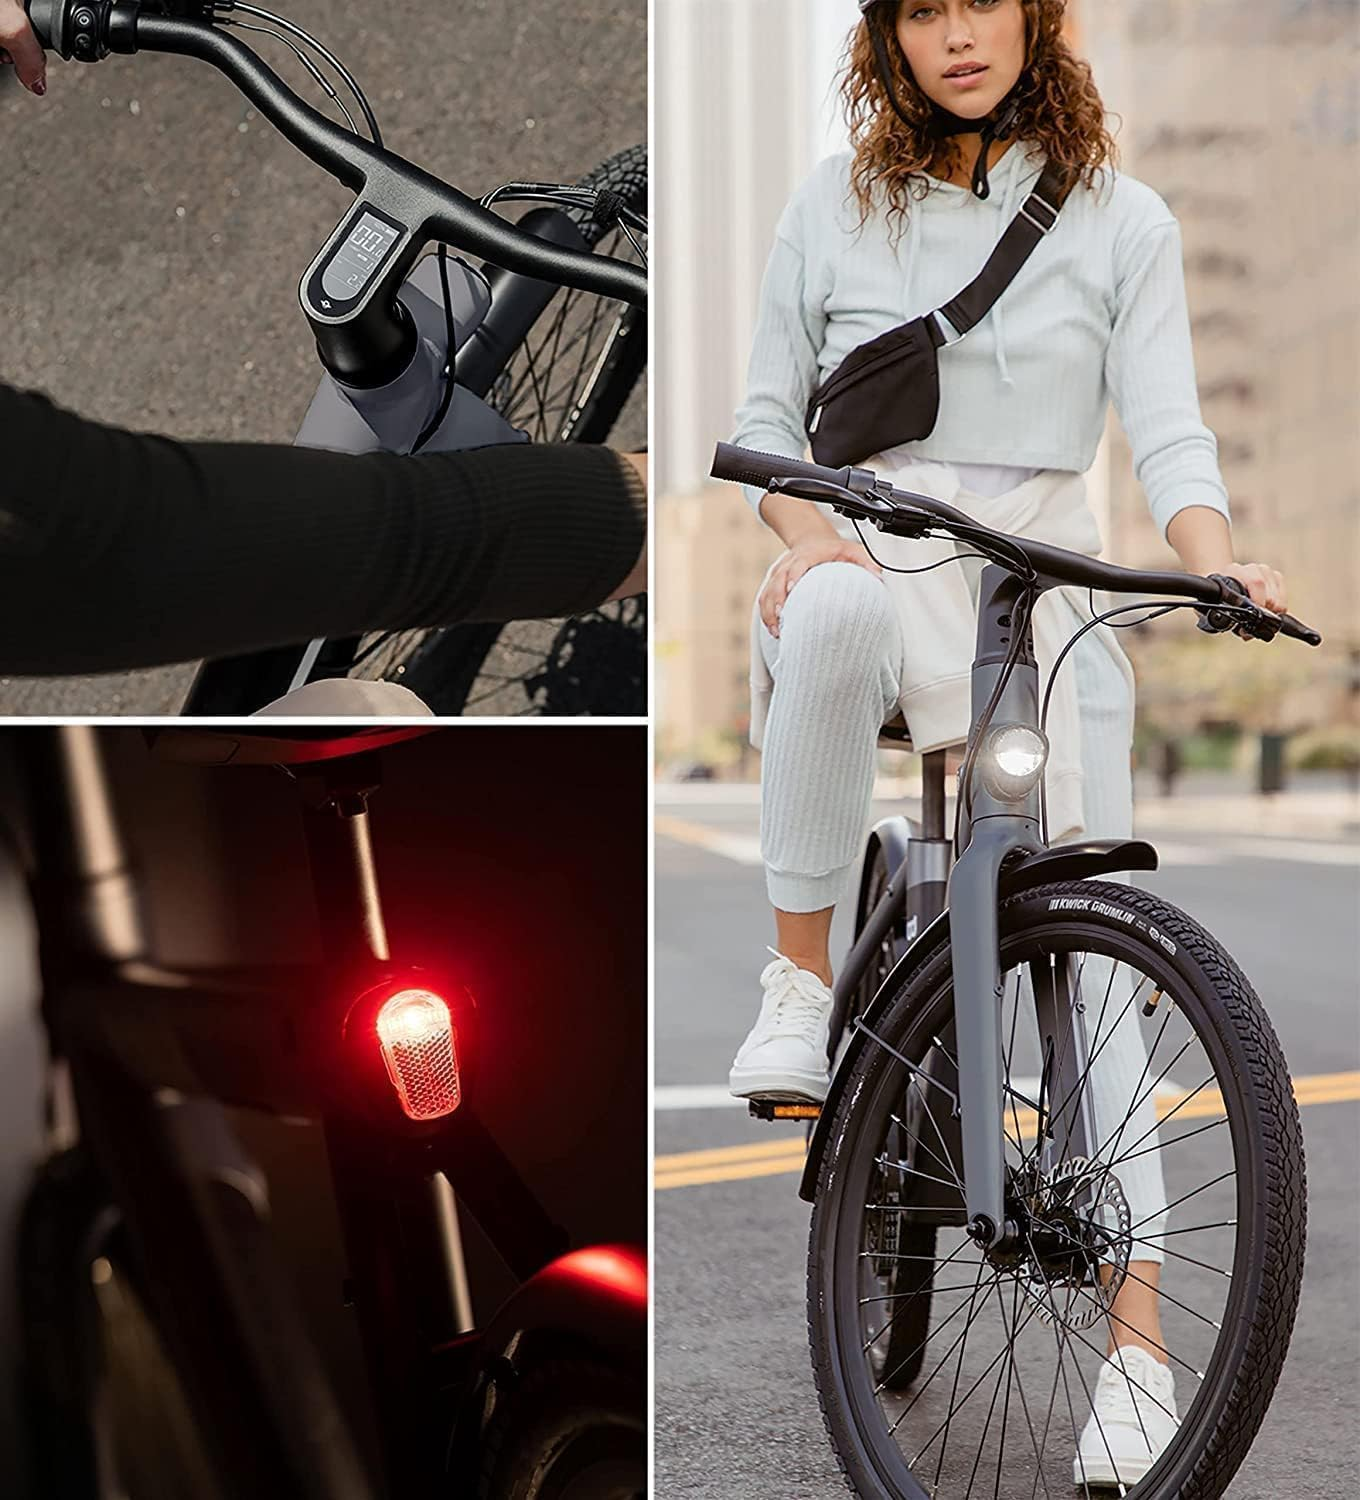 Unisex-Rad, Diebstahlschutz Zoll, (Laufradgröße: LED 150-180CM APP, Lampe C6F City-Bike StVZO-zugelassene Citybike Connect SACHSENRAD Urban xBird 26 Schwarz) Mit für